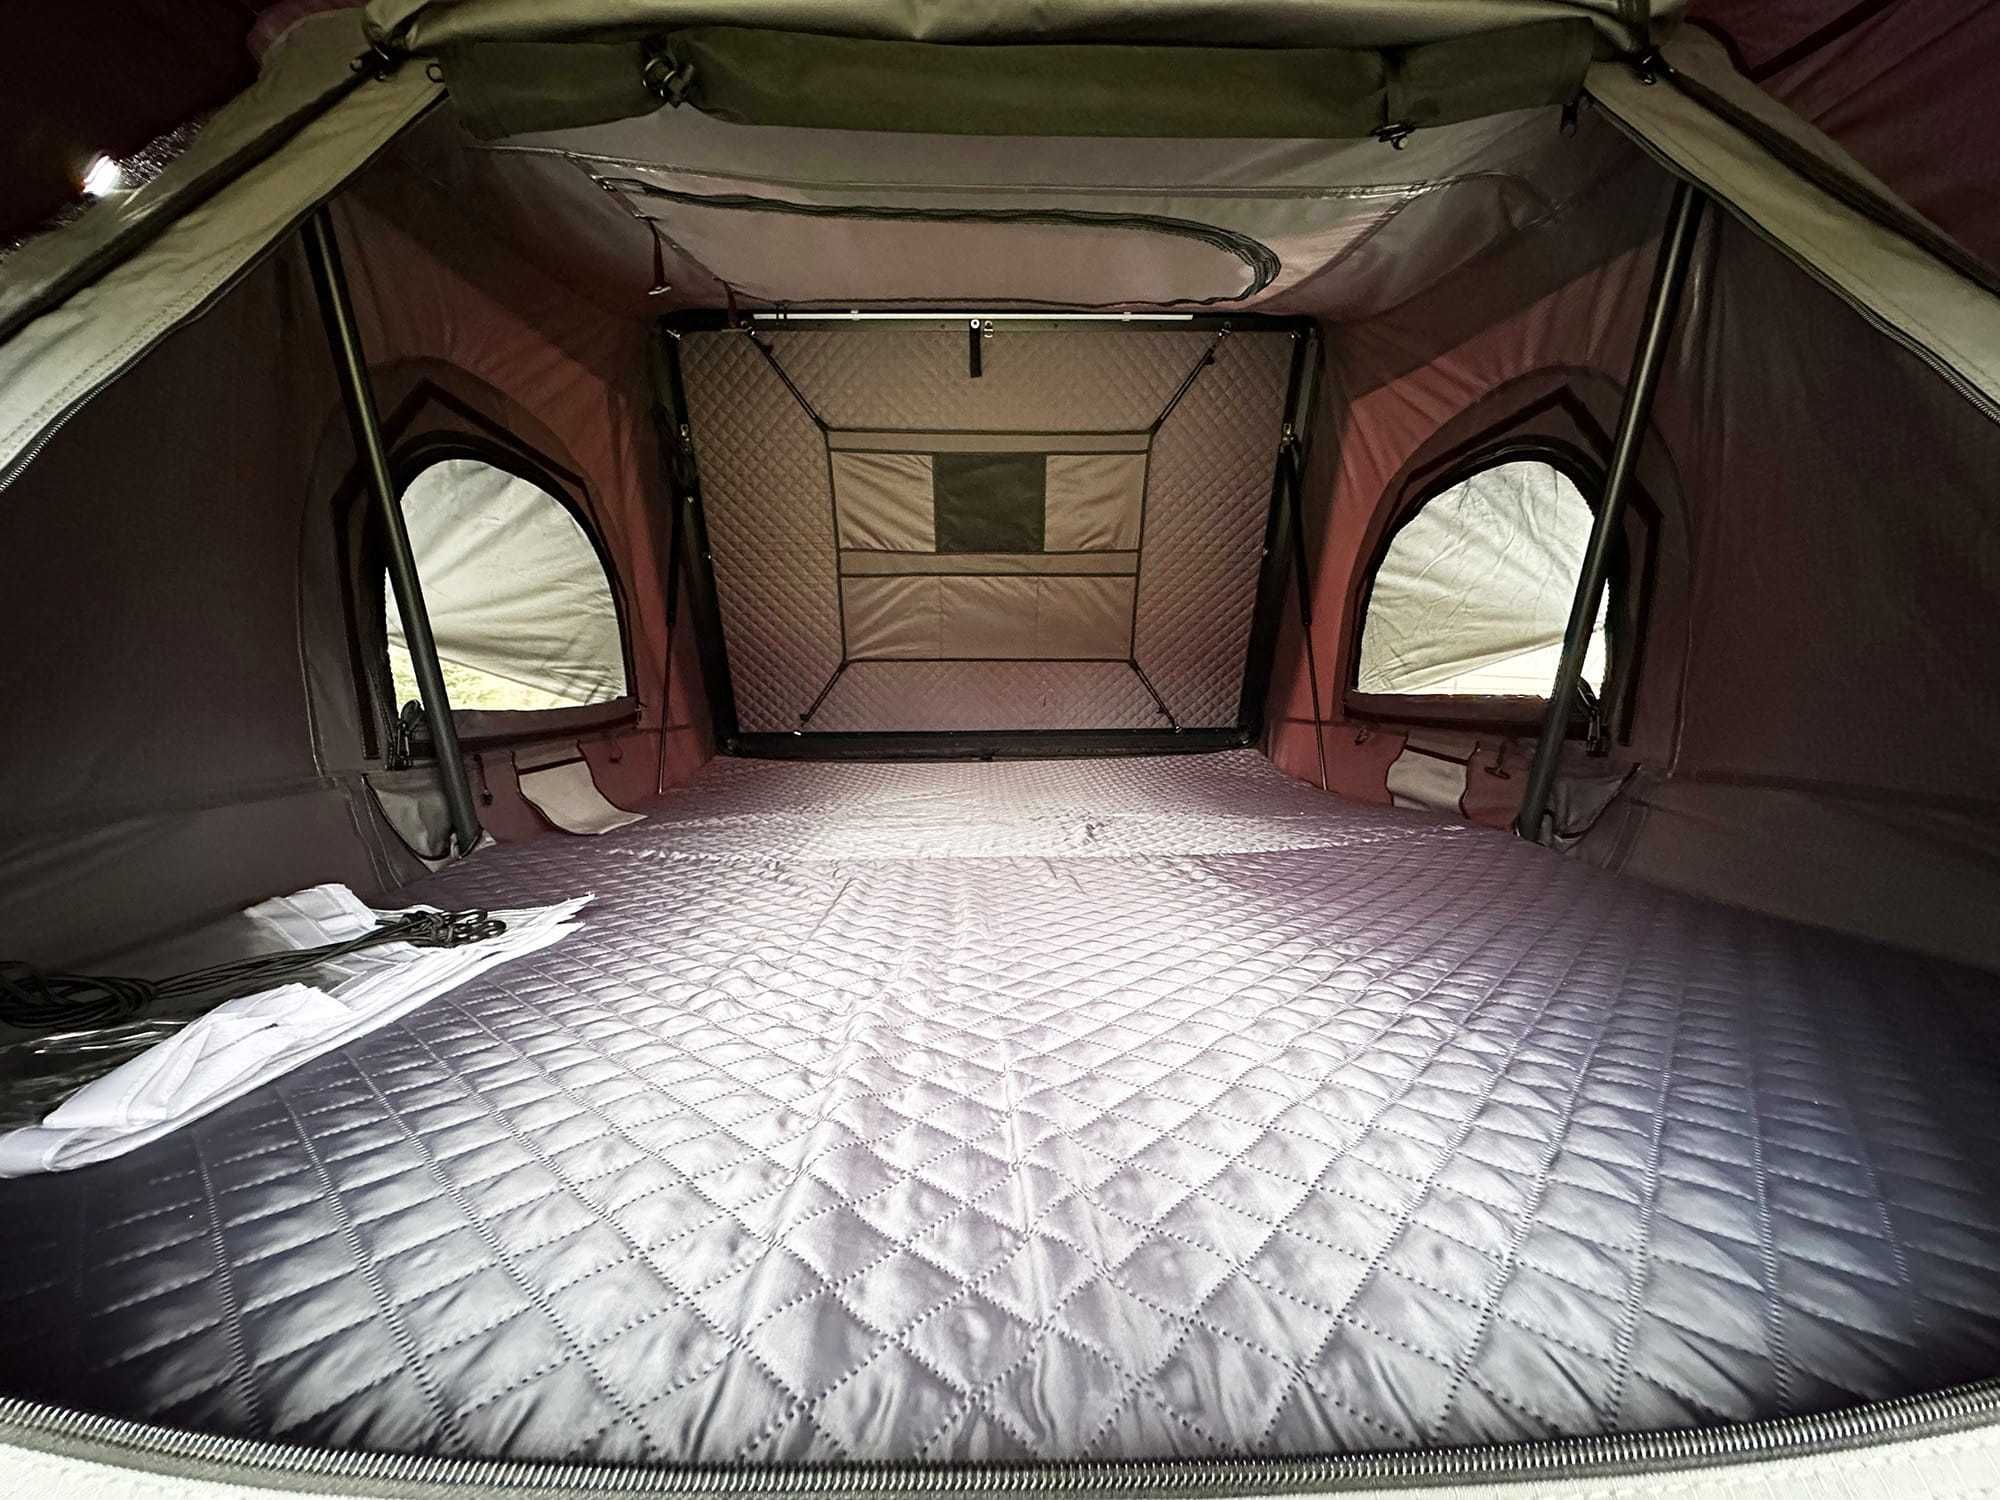 Namiot dachowy Escape VIGO 190 cm aluminiowy z matą antykondensacyjną